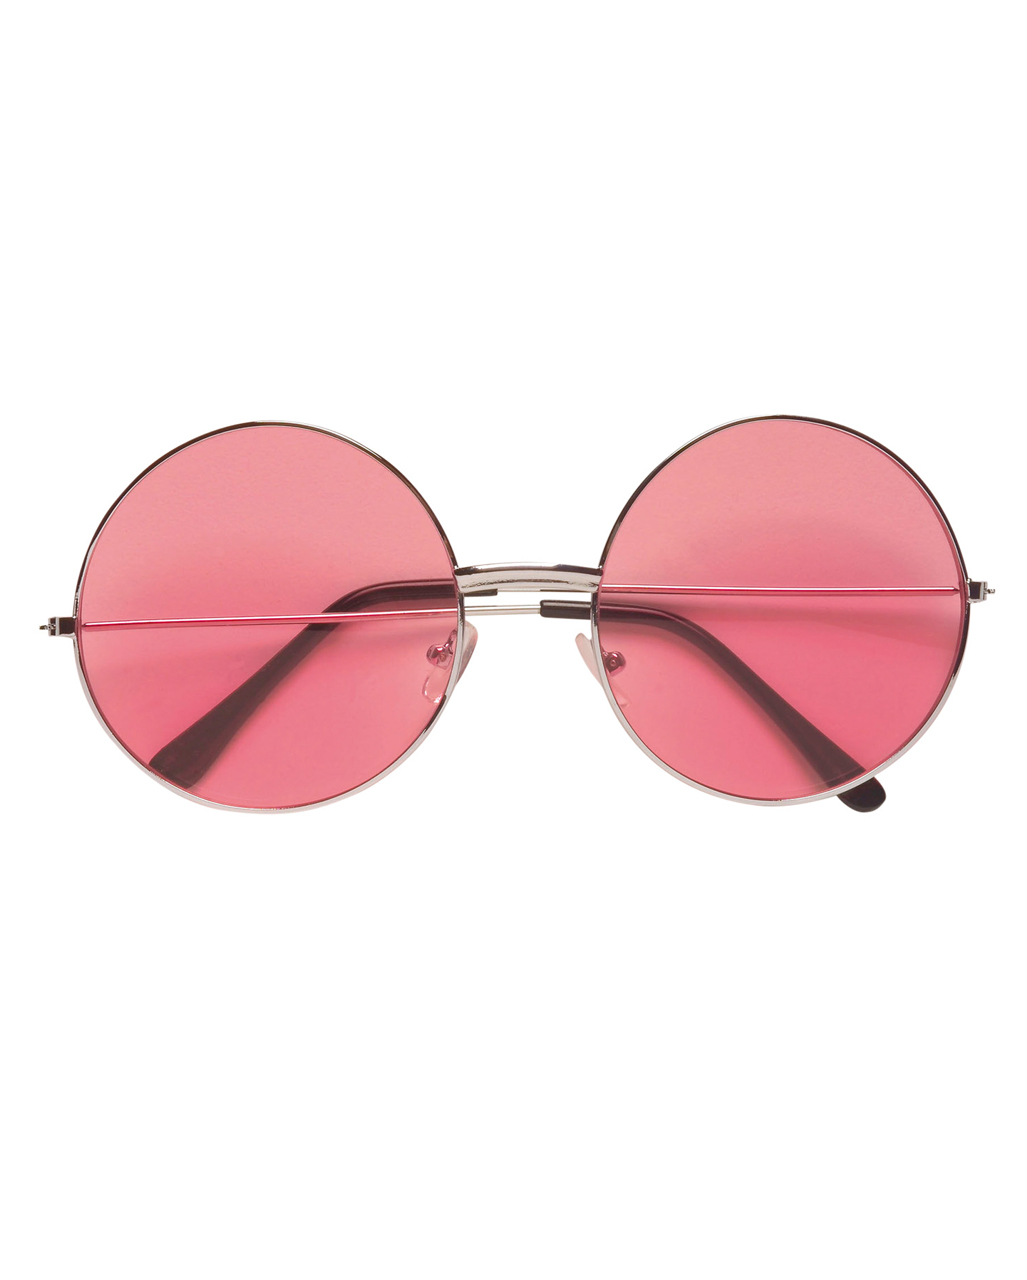 Pinke 70er Sonnenbrille  Günstig Hippie Brillen kaufen